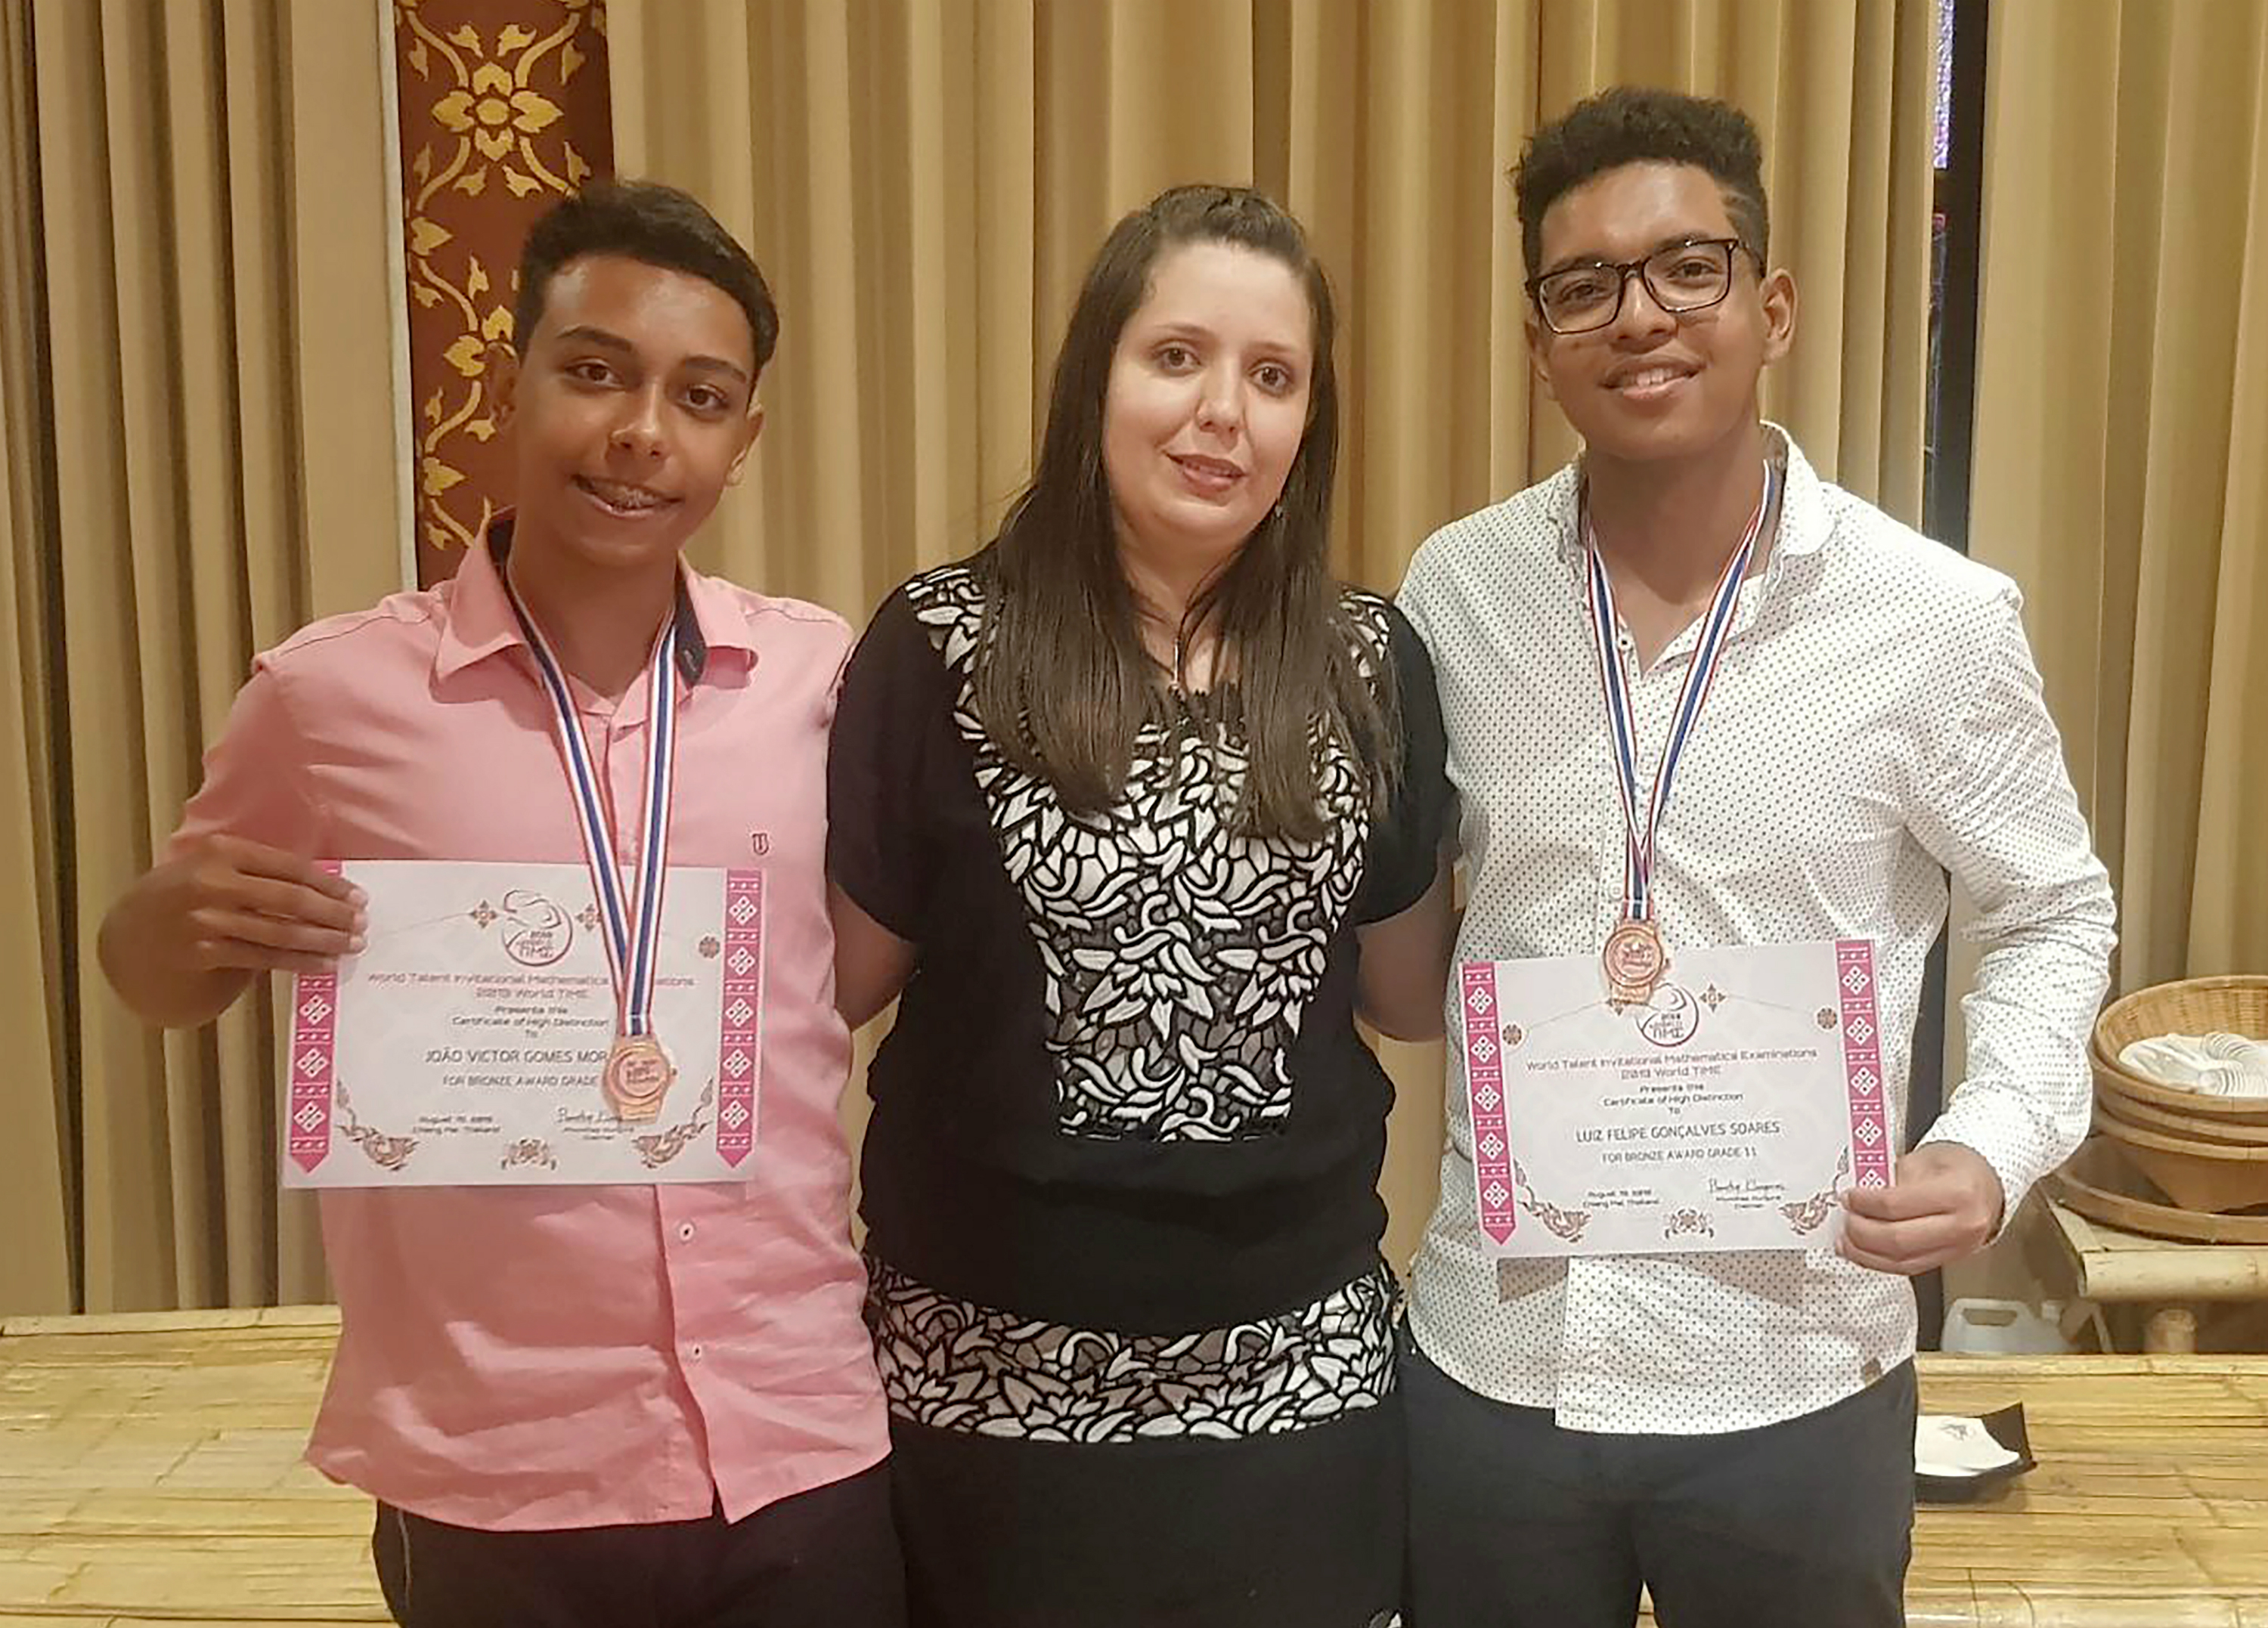 Alunos de BH conquistam medalha de bronze em Olimpíada Internacional de Matemática na Tailândia